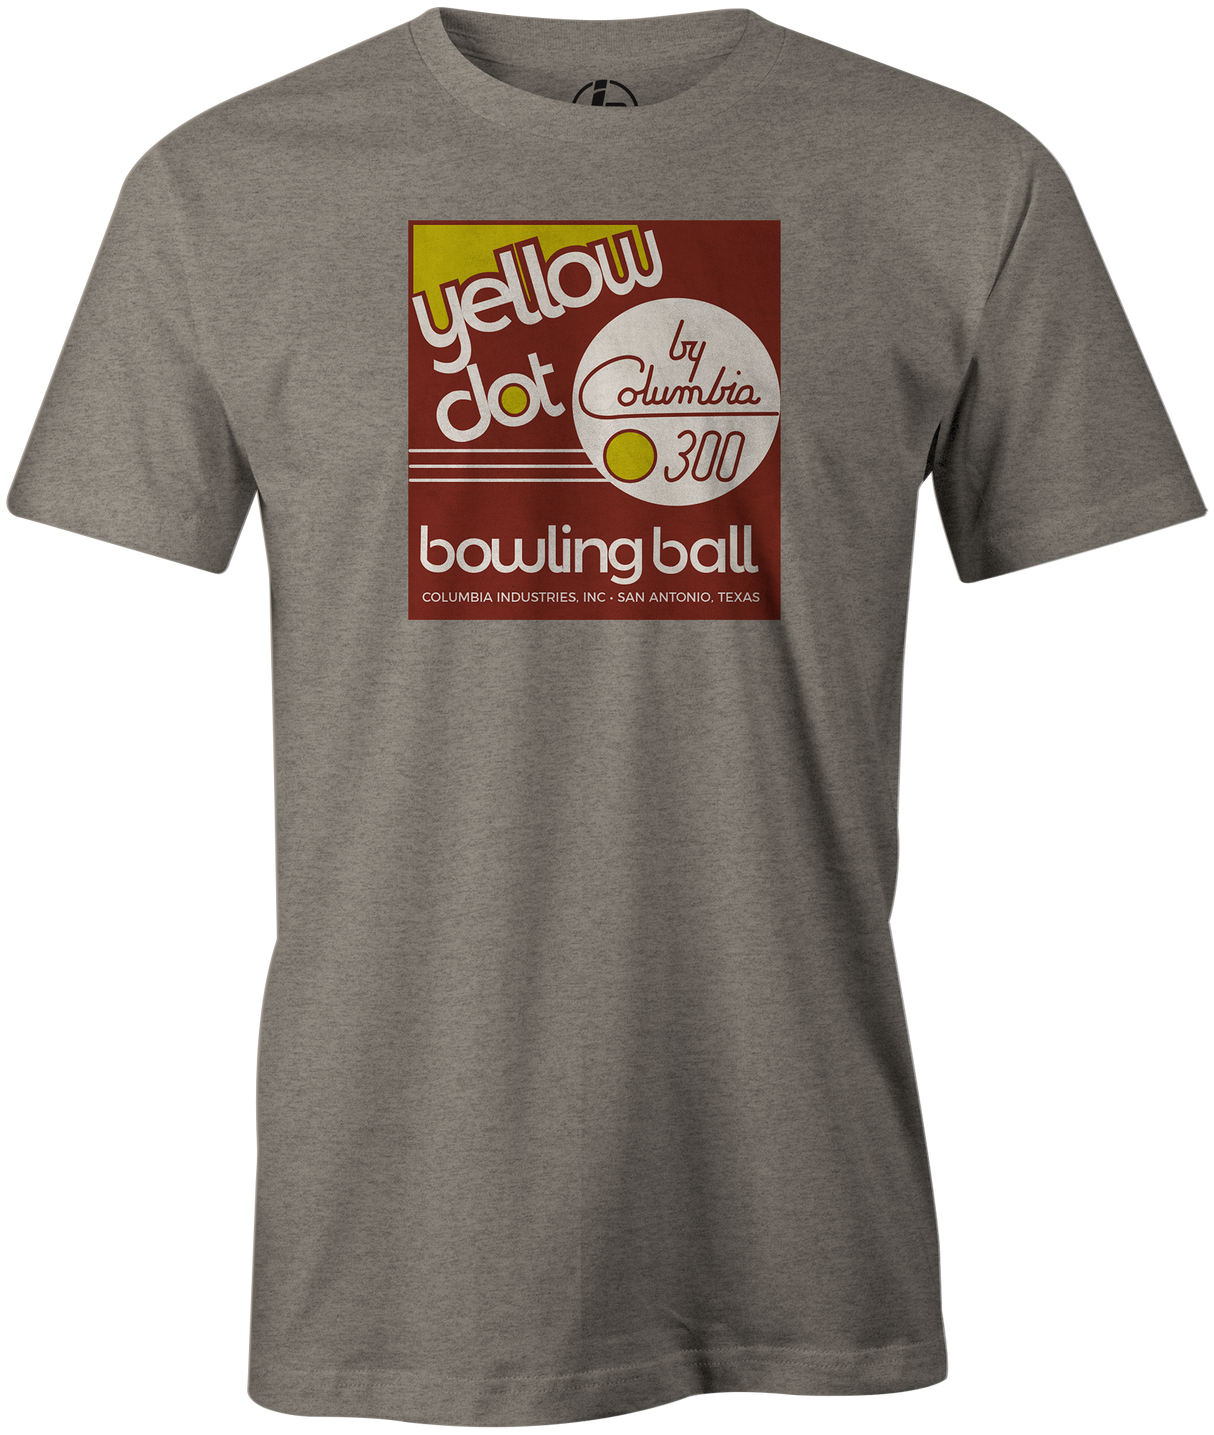 Yellow Dot Men's T-shirt, Grey, Retro, Bowling, Tshirt, tee, tee-shirt, tee shirt. Bowling ball. Columbia 300.